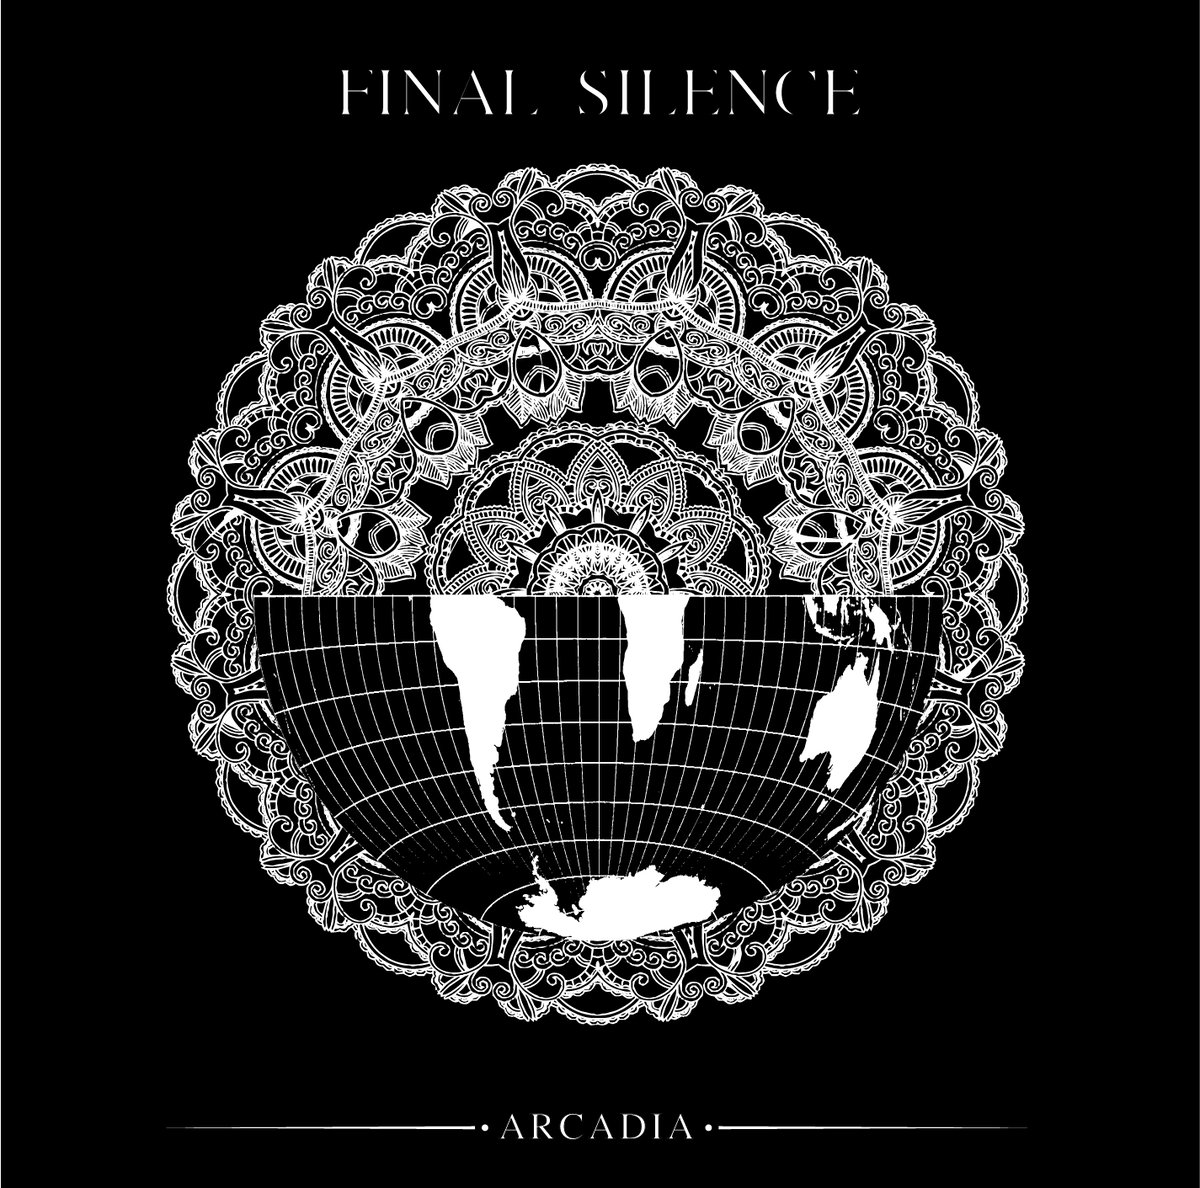 Final album. Arcadia альбом. Silence песня. Silence album. The Final Silence.